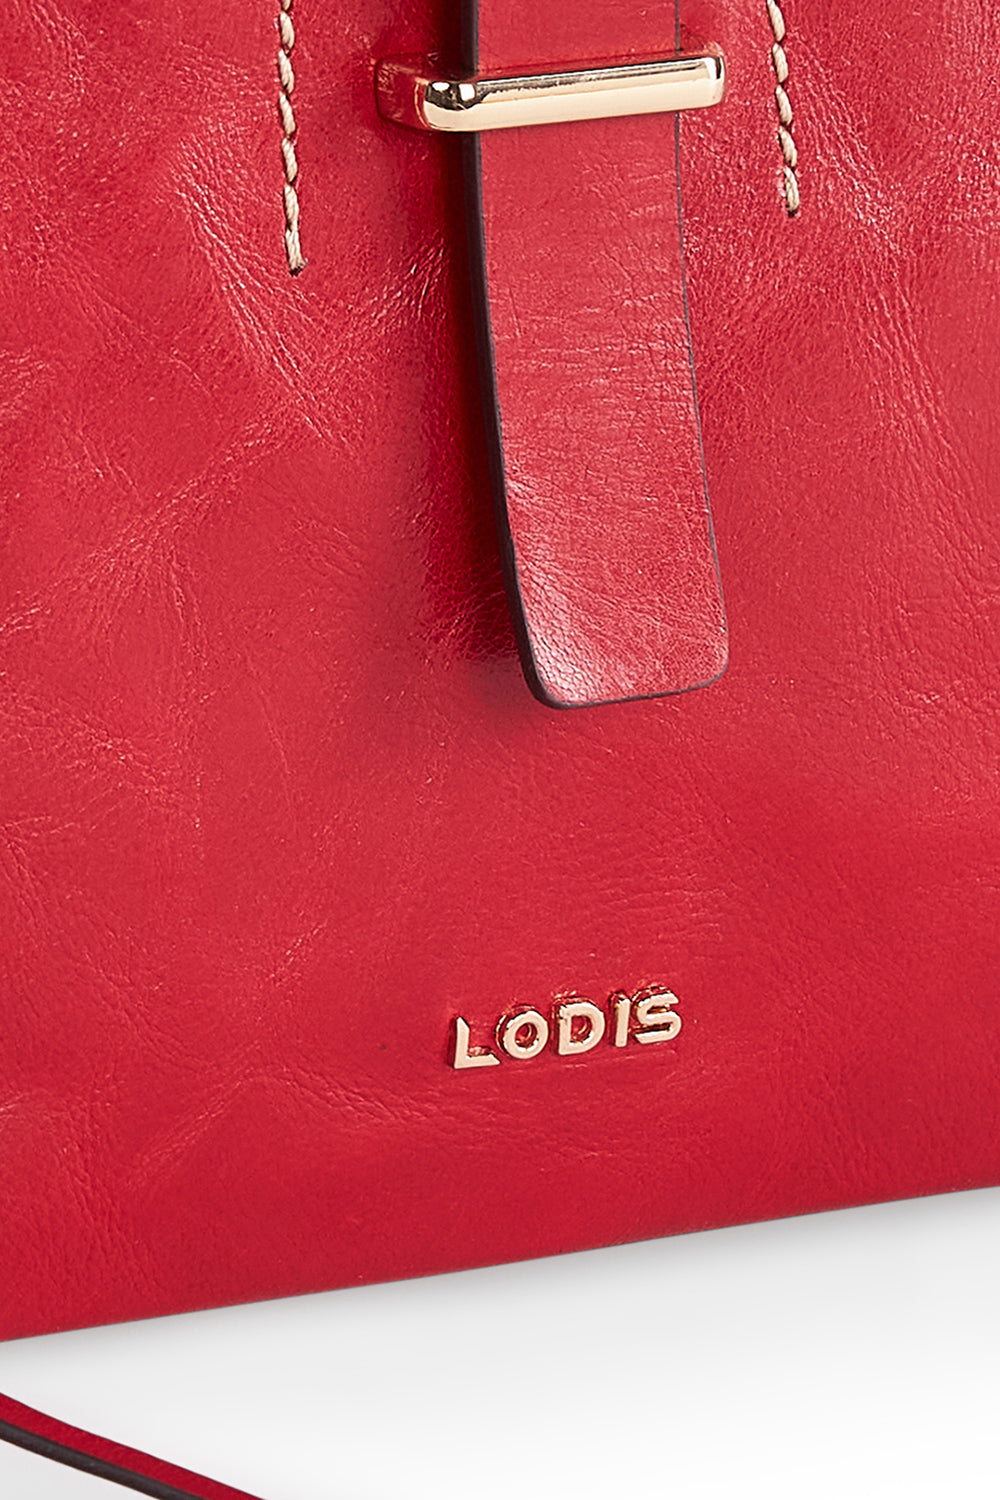 Lodis Glazed Leather Darcy Shoulder Bag 